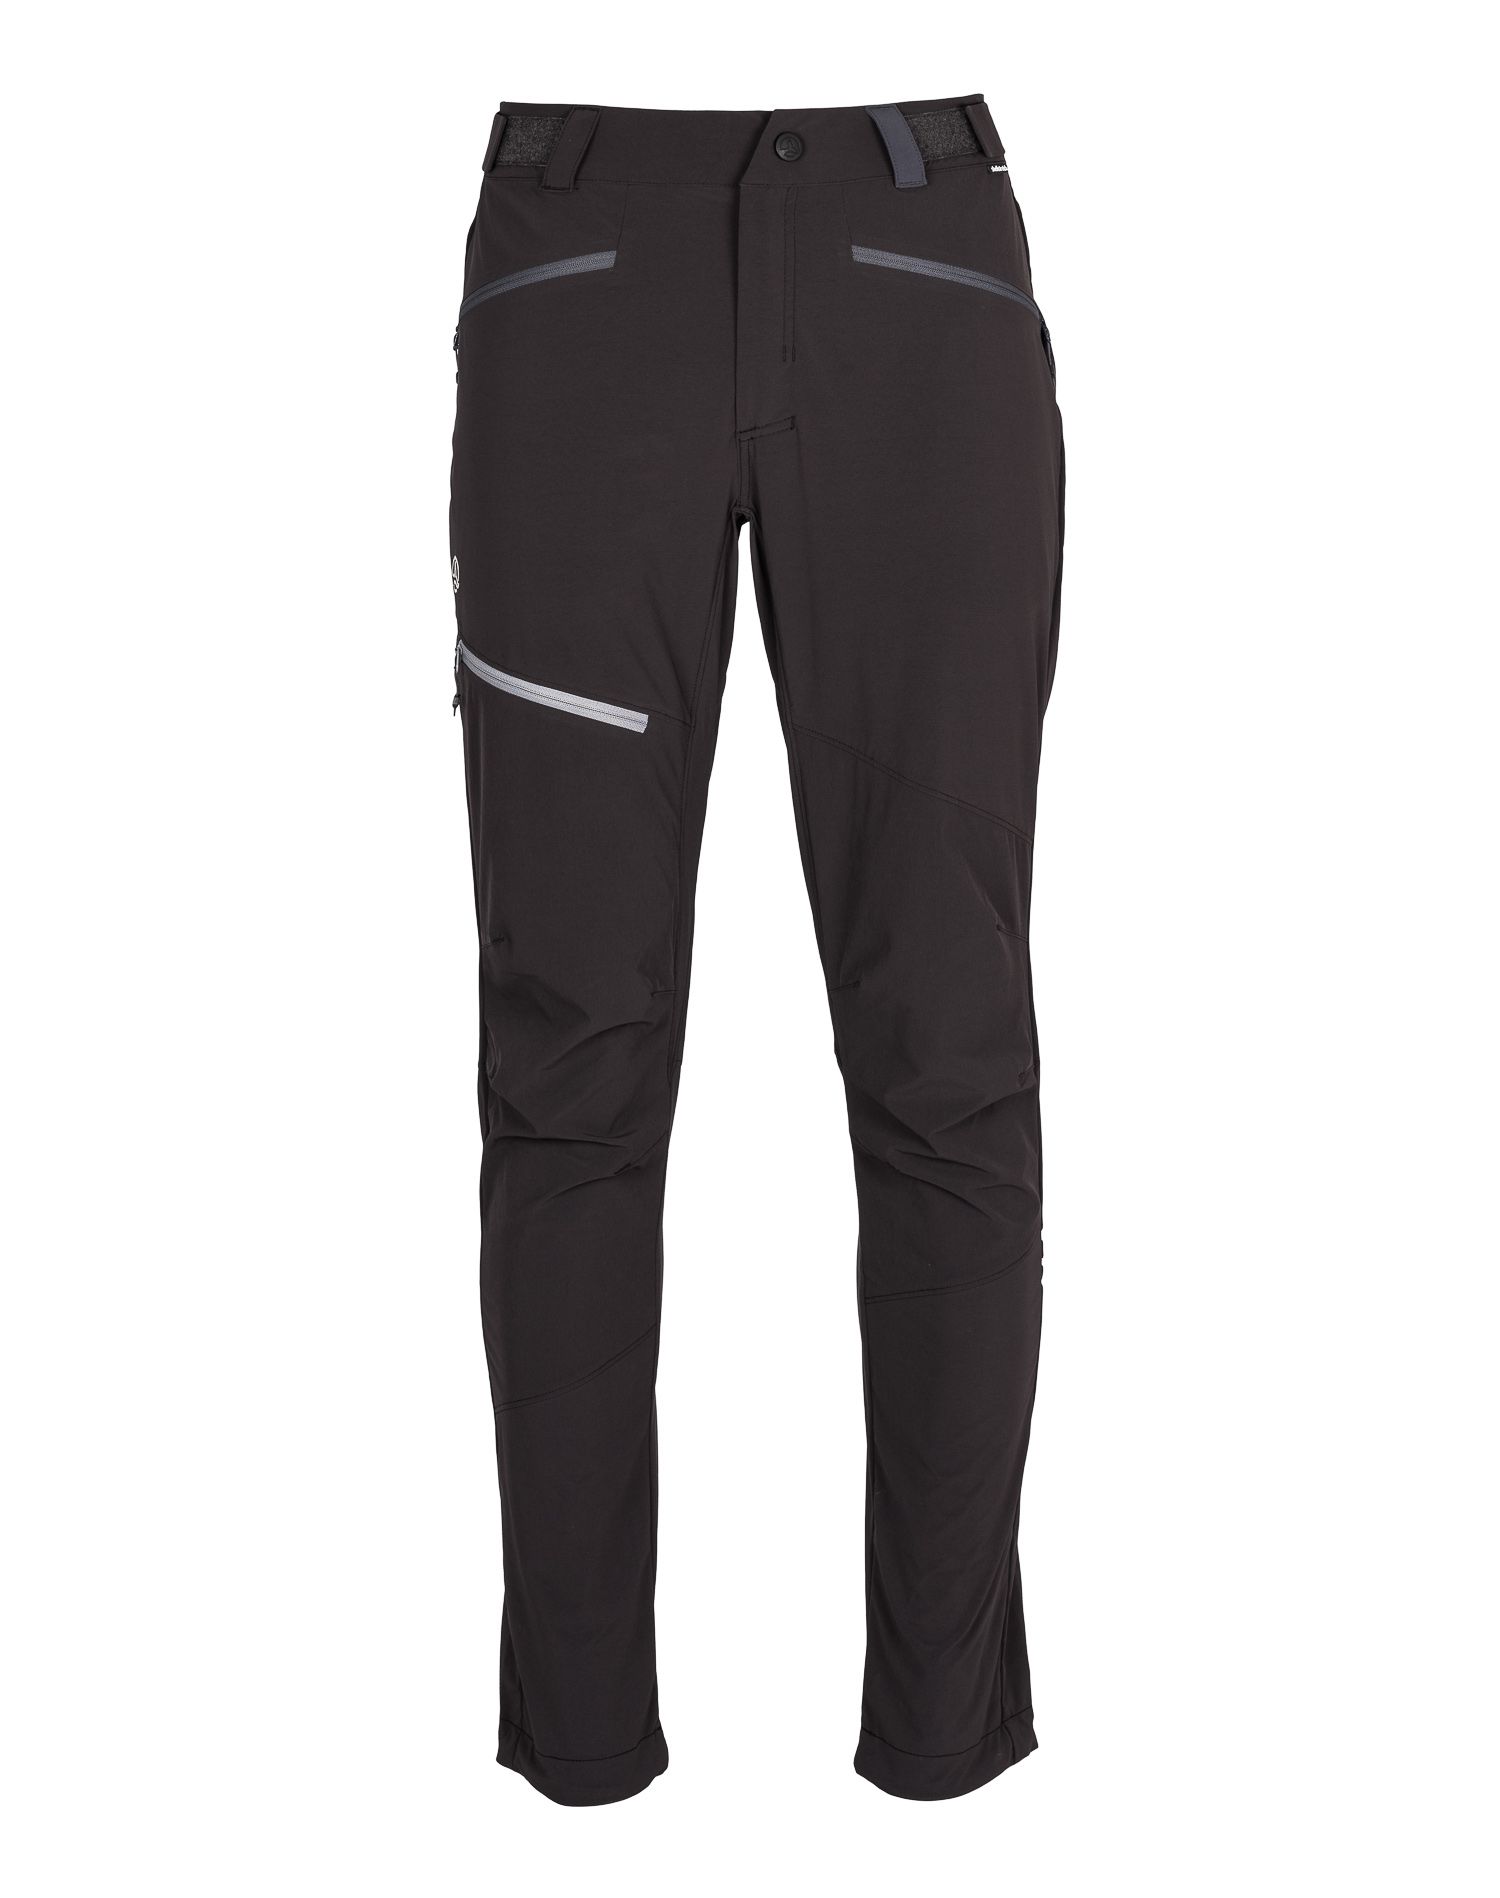 Спортивные брюки мужские Ternua Rotor Pt M черные XL